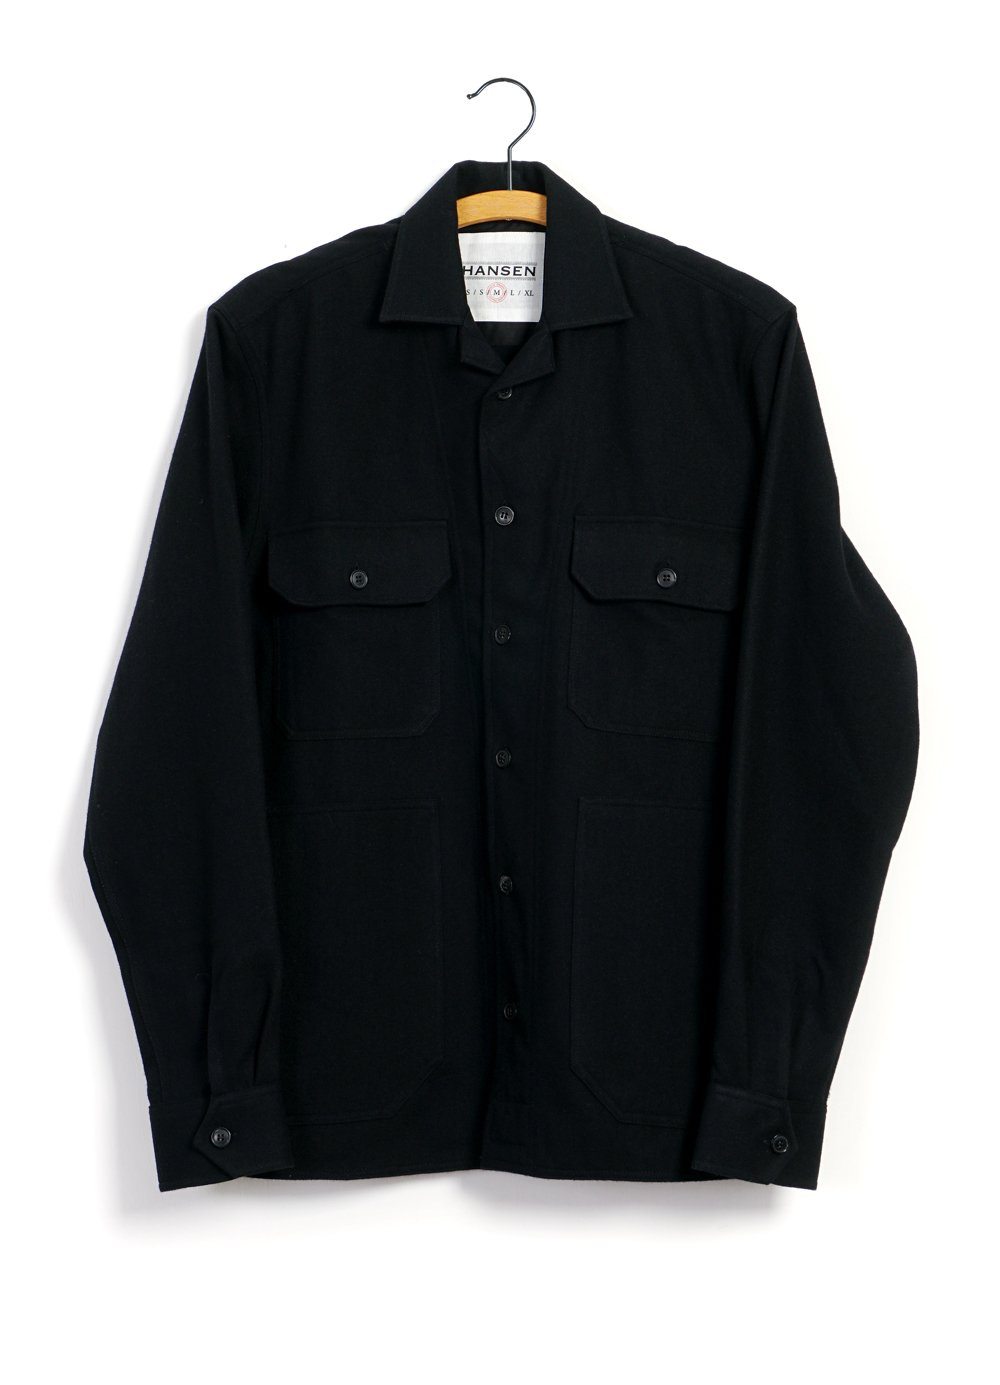 HANSEN Garments - STEFAN | Worker Over Shirt | Black - HANSEN Garments